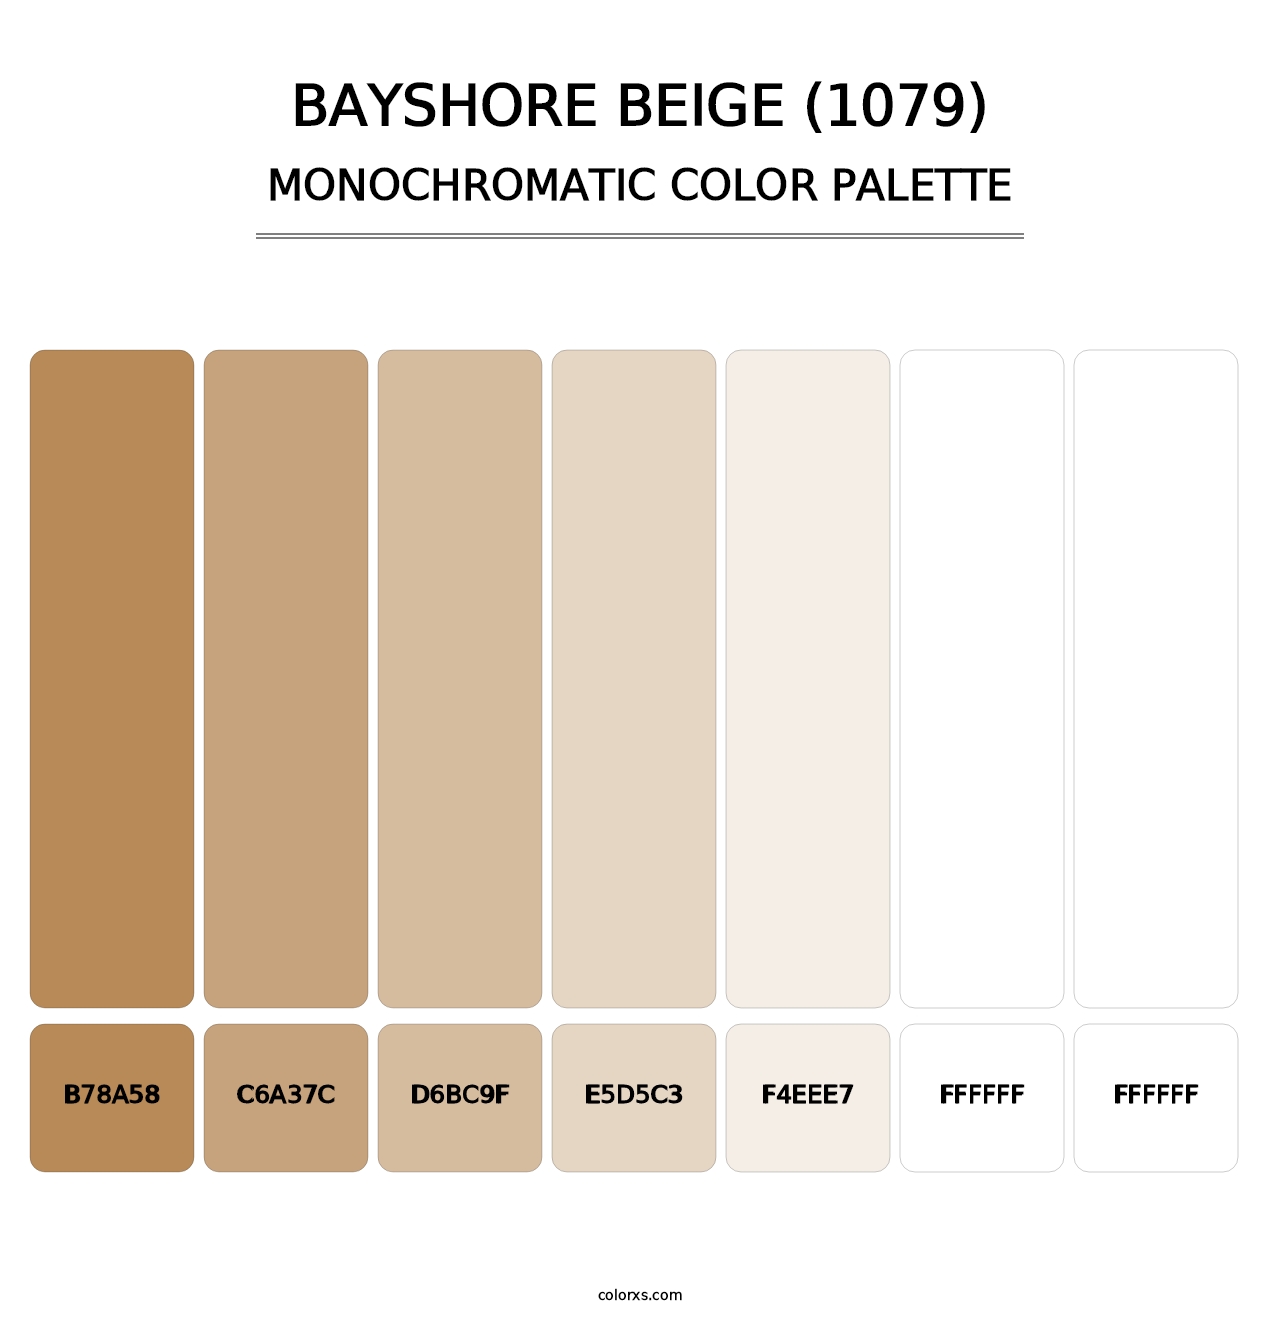 Bayshore Beige (1079) - Monochromatic Color Palette